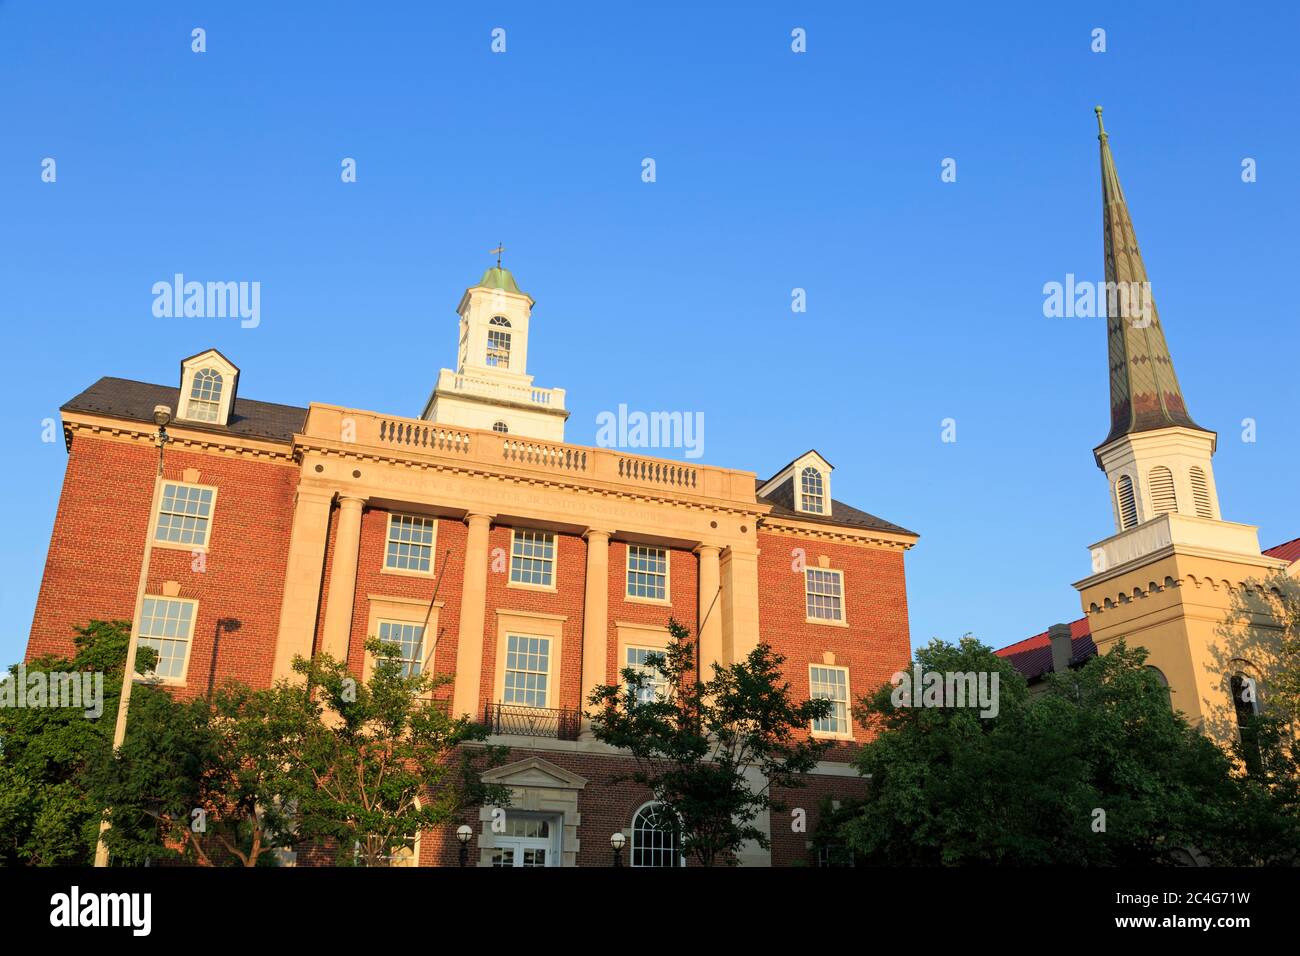 United States Courthouse, Alexandria, Virginia, USA Stock Photo